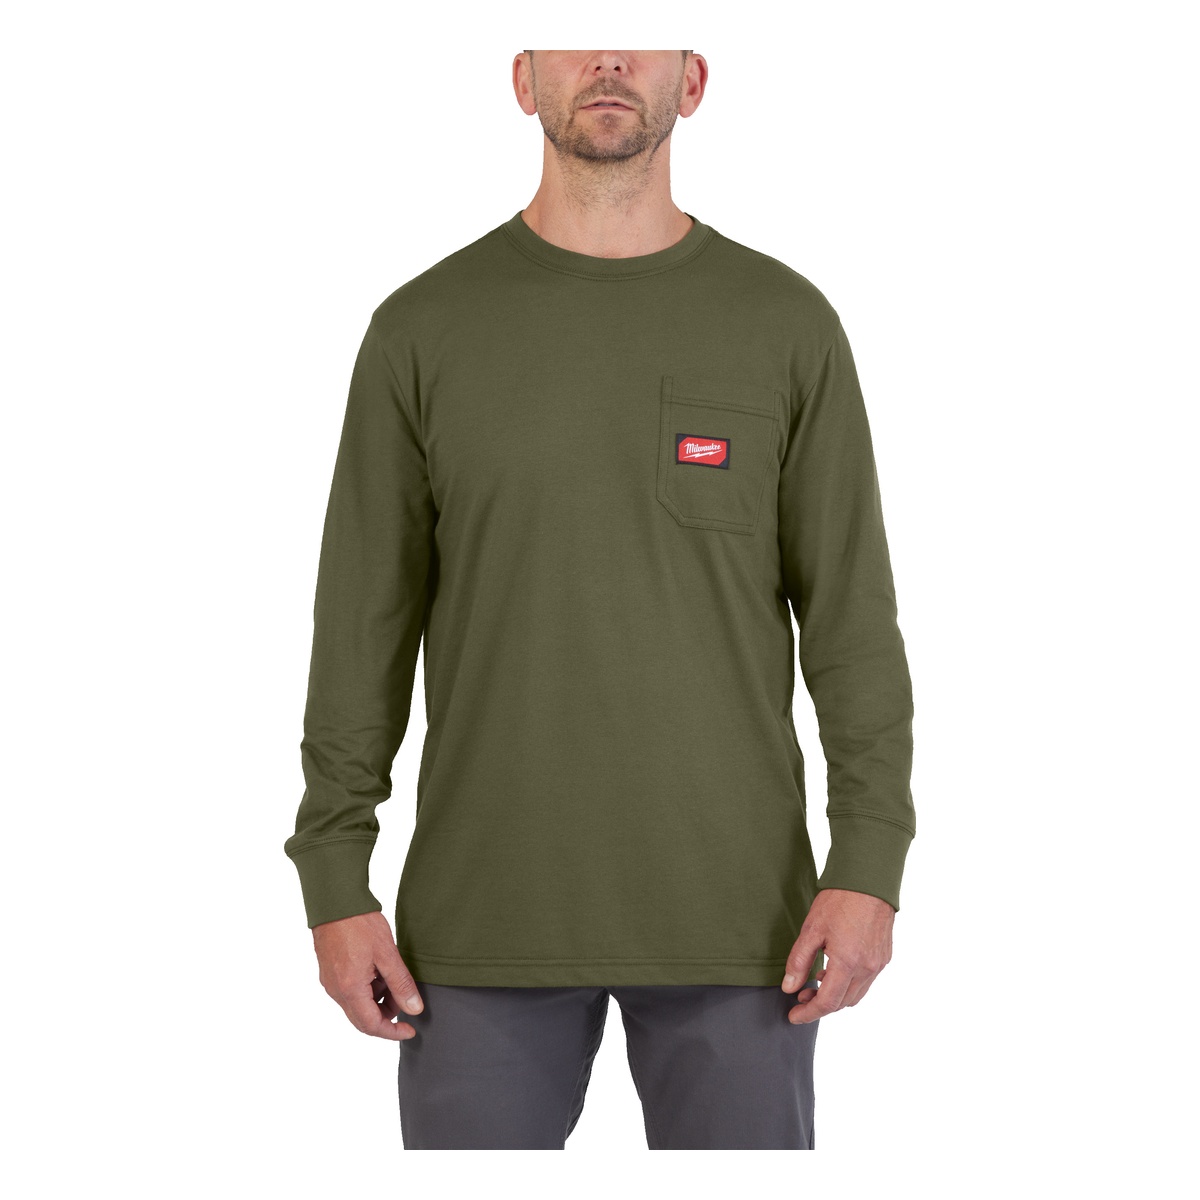 Milwaukee Arbeits-Langarm-Shirt grün mit UV-Schutz WTLSGN-M - 1 Stk.